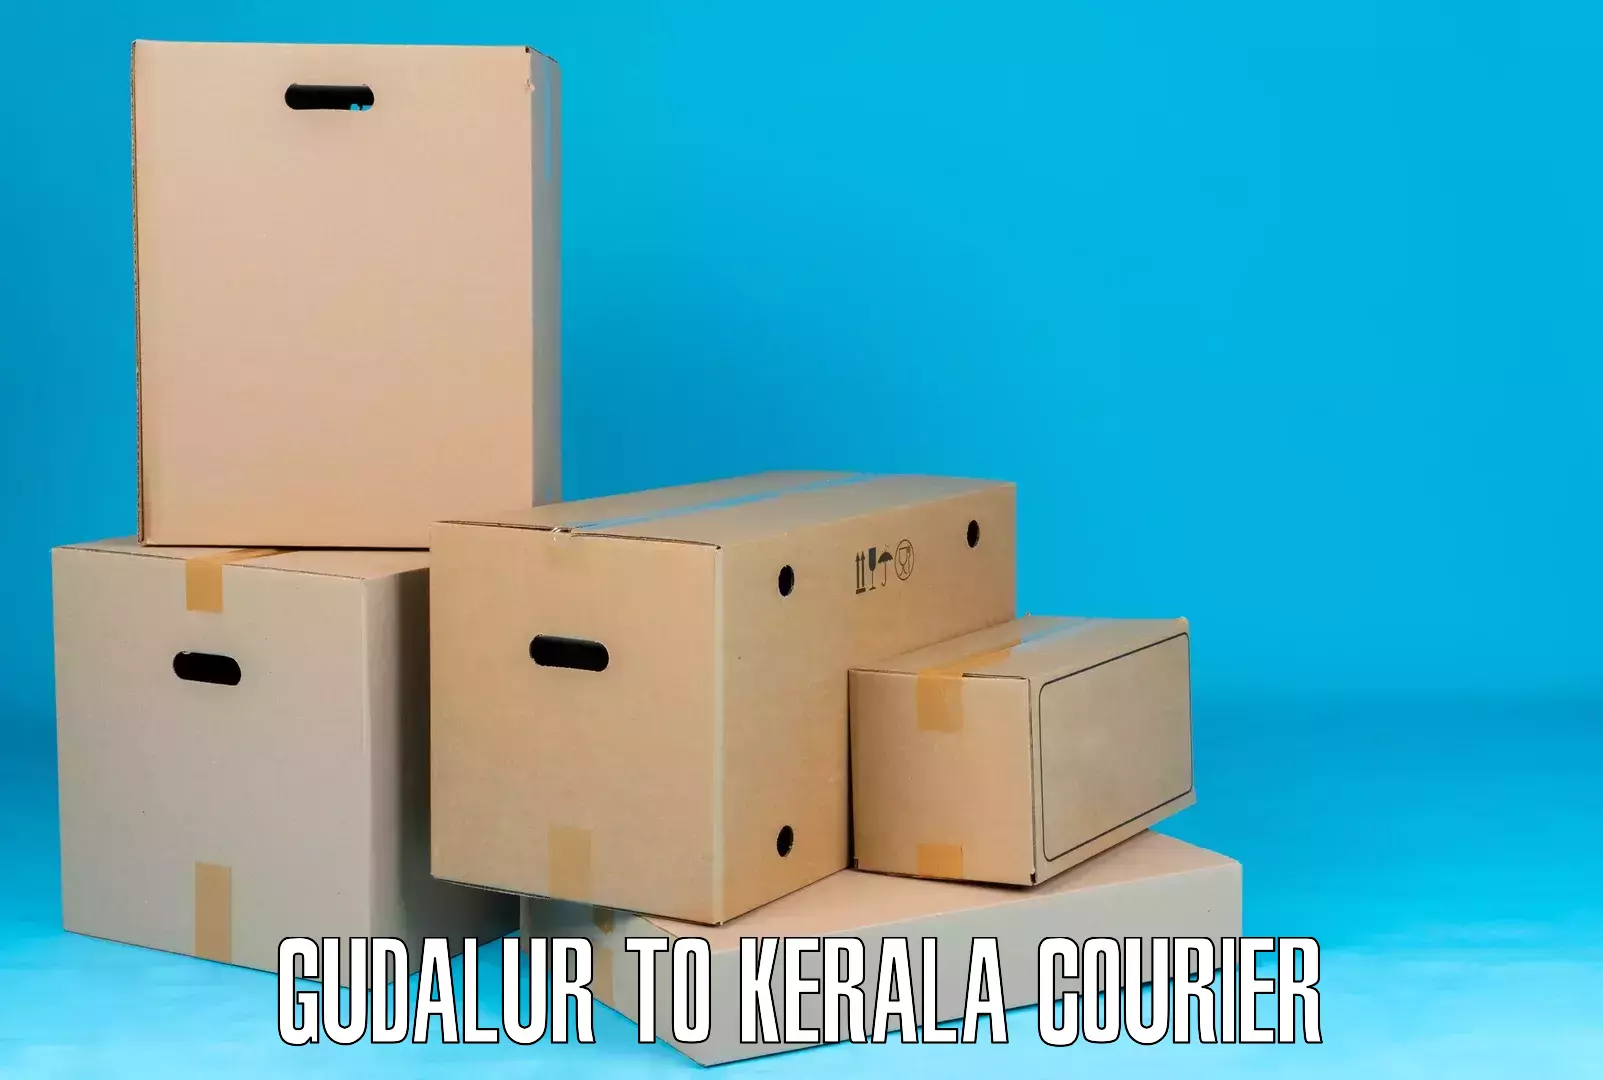 Courier rate comparison Gudalur to Cochin Port Kochi